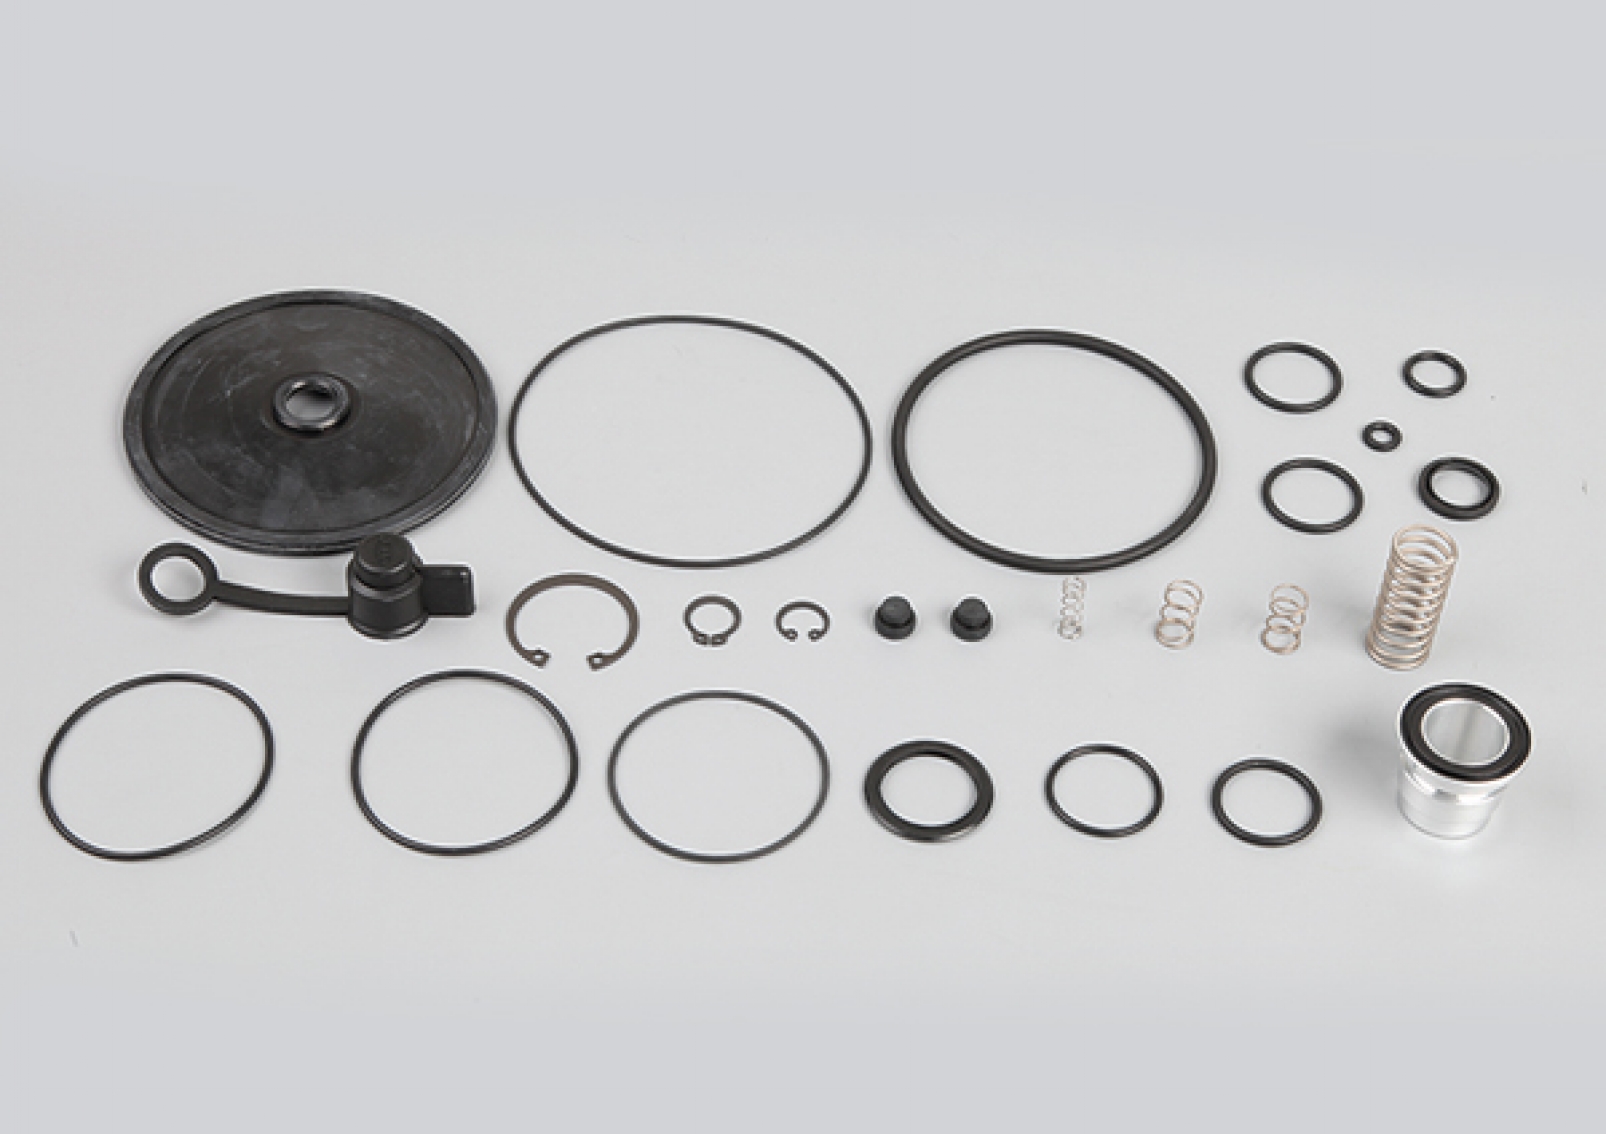 Trailer Load Sensing Valve Repair Kit, I84451/008